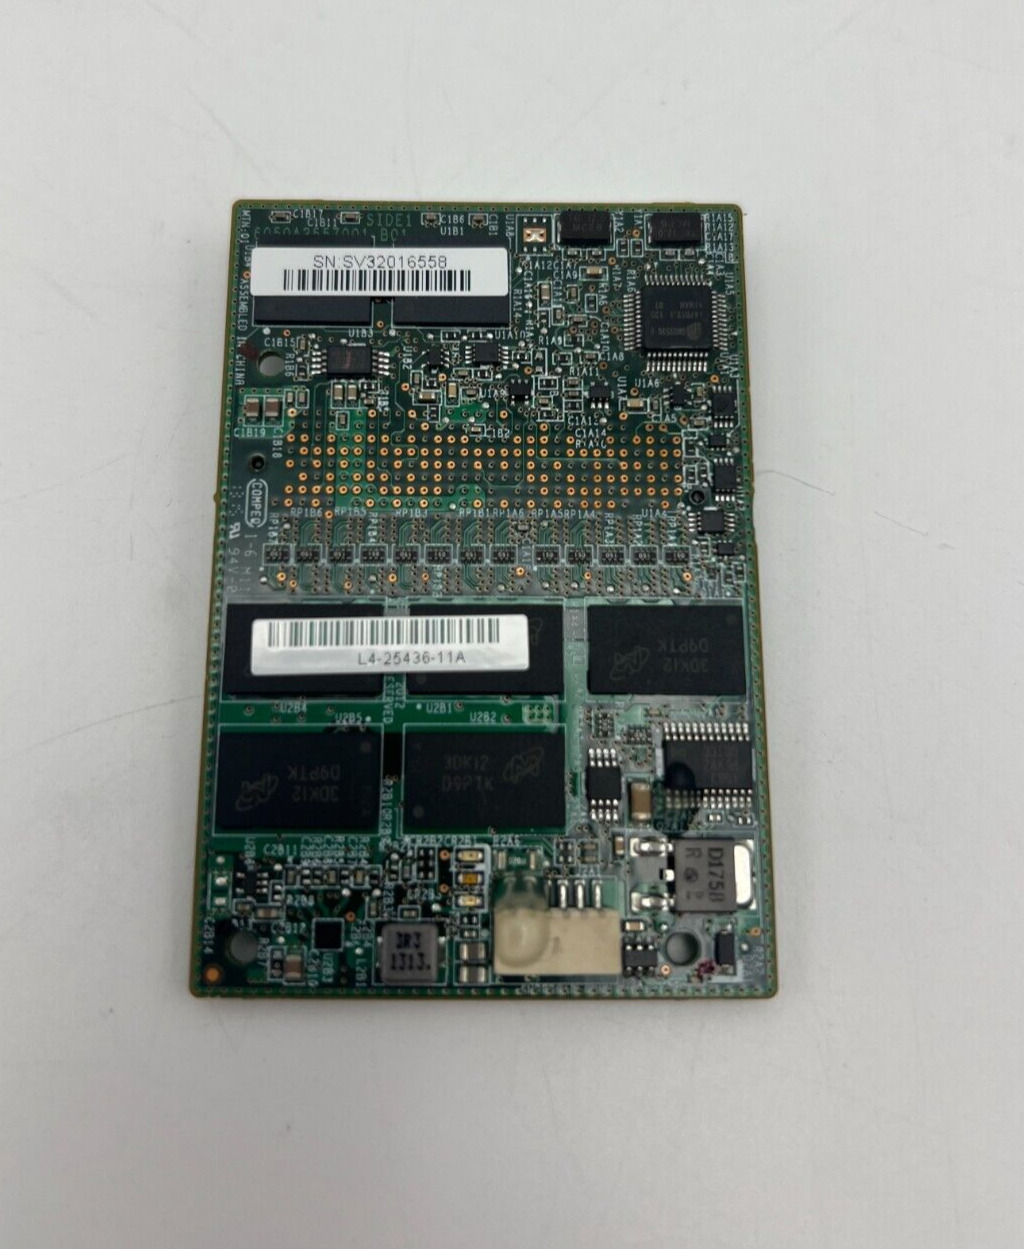 IBM ServeRAID M5100/M5110 Series 1GB Flash RAID 5 46C9029 L4-25436-11A